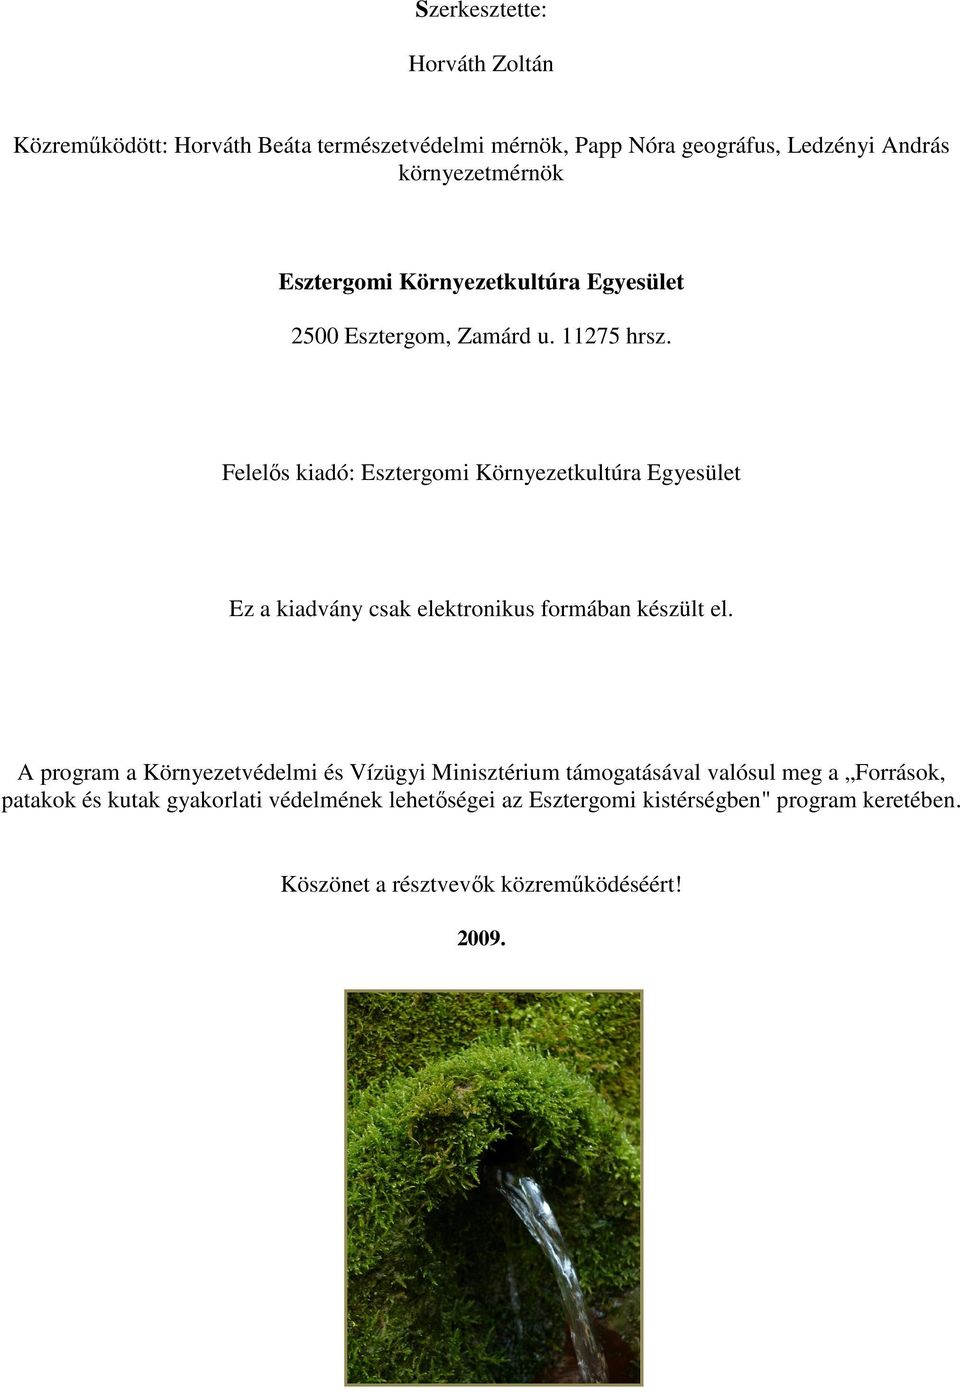 Felelıs kiadó: Esztergomi Környezetkultúra Egyesület Ez a kiadvány csak elektronikus formában készült el.